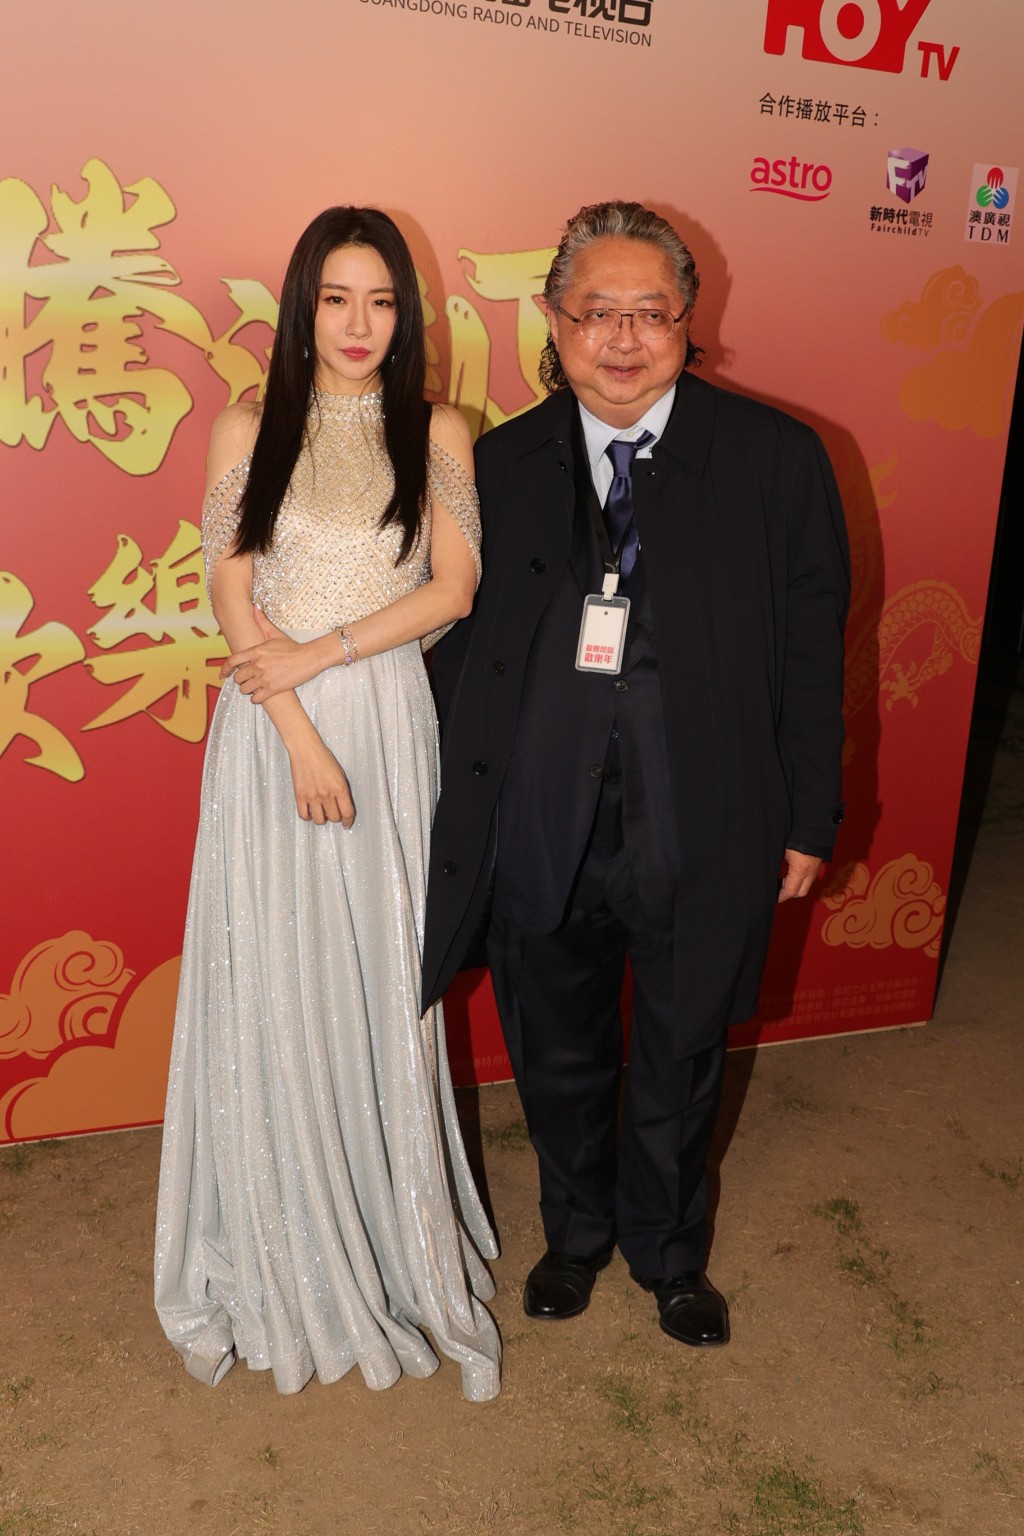 菊梓乔宣布离巢星梦同日，即出席HOY TV新春节目《龙腾湾区欢乐年》 彩排。  ​